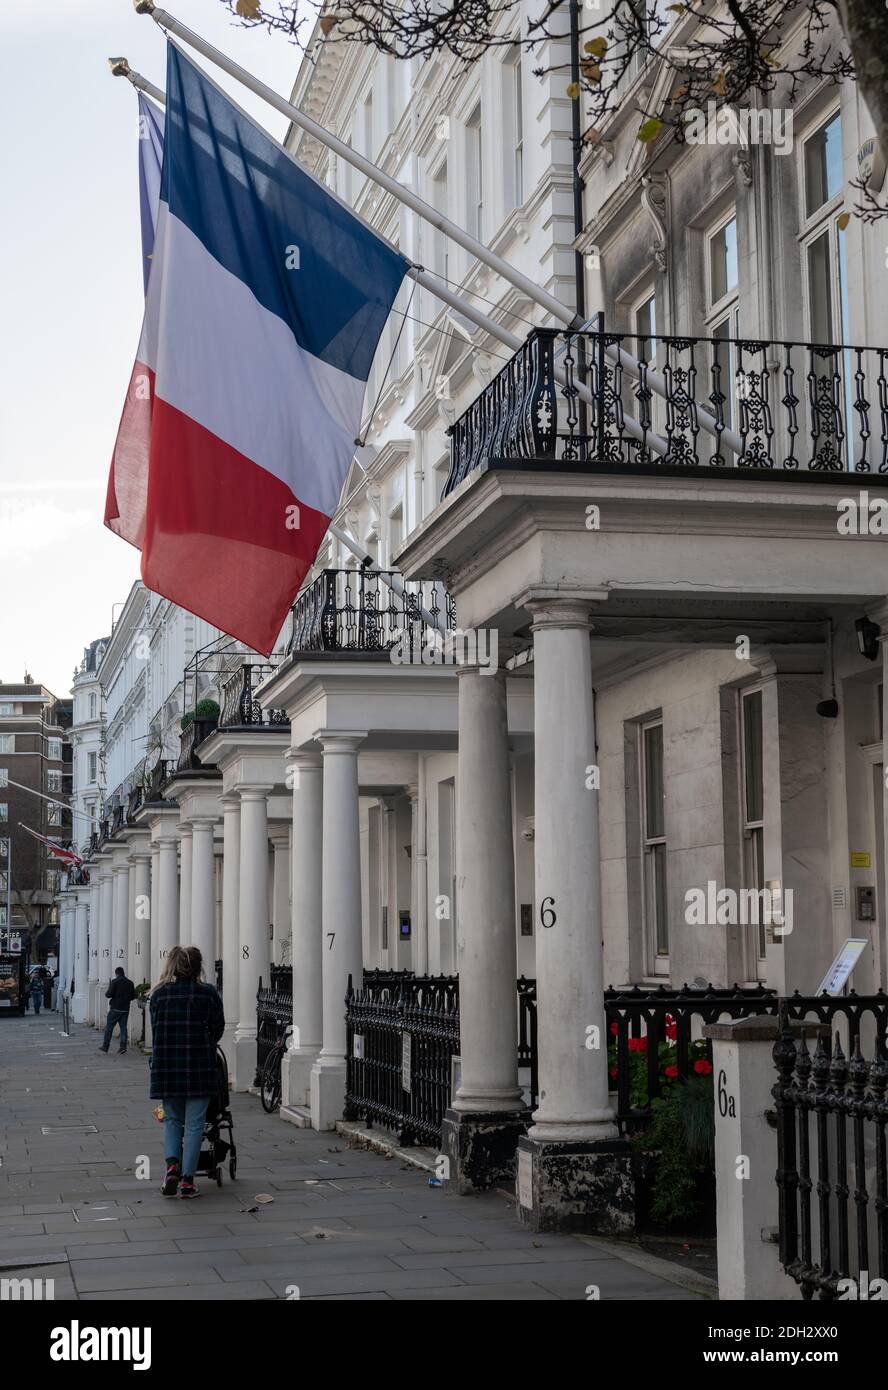 Ein Straßenblick auf das französische Konsulat in South Kensington mit der französischen und der EU-Flagge, die vom Gebäude hängt. Stockfoto